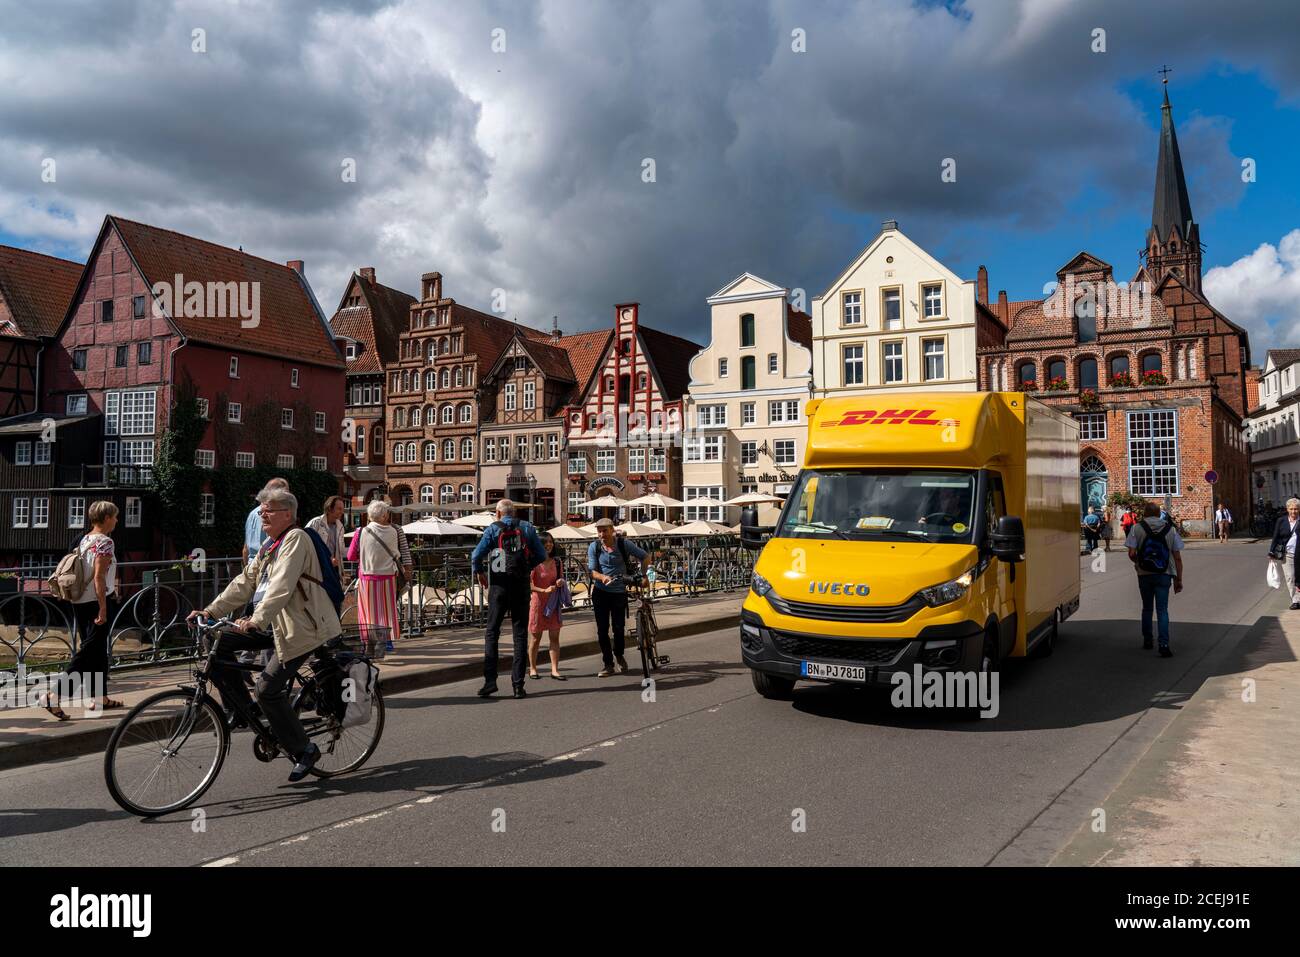 Die Altstadt von Lüneburg, Stintmarkt am Fluss Ilmenau, historisches Hafenviertel, viele Restaurants, Kneipen, Cafés, DHL Paketdienst Fahrzeug, Low Stockfoto